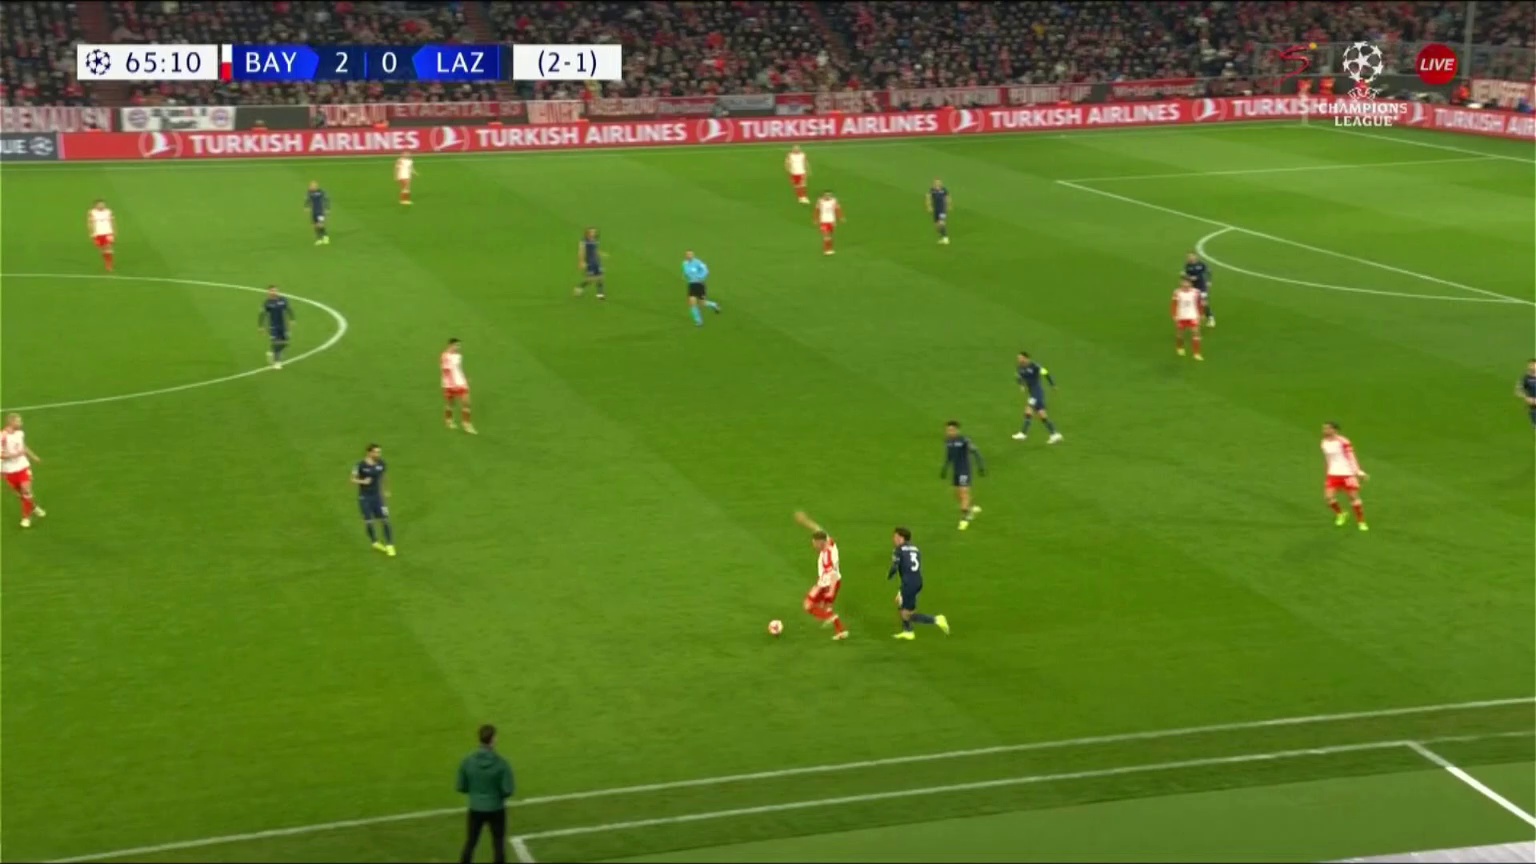 Bayern Munich [3] - 0 Lazio - Harry Kane 66â€Ž'â€Ž [3 - 1 on agg.]